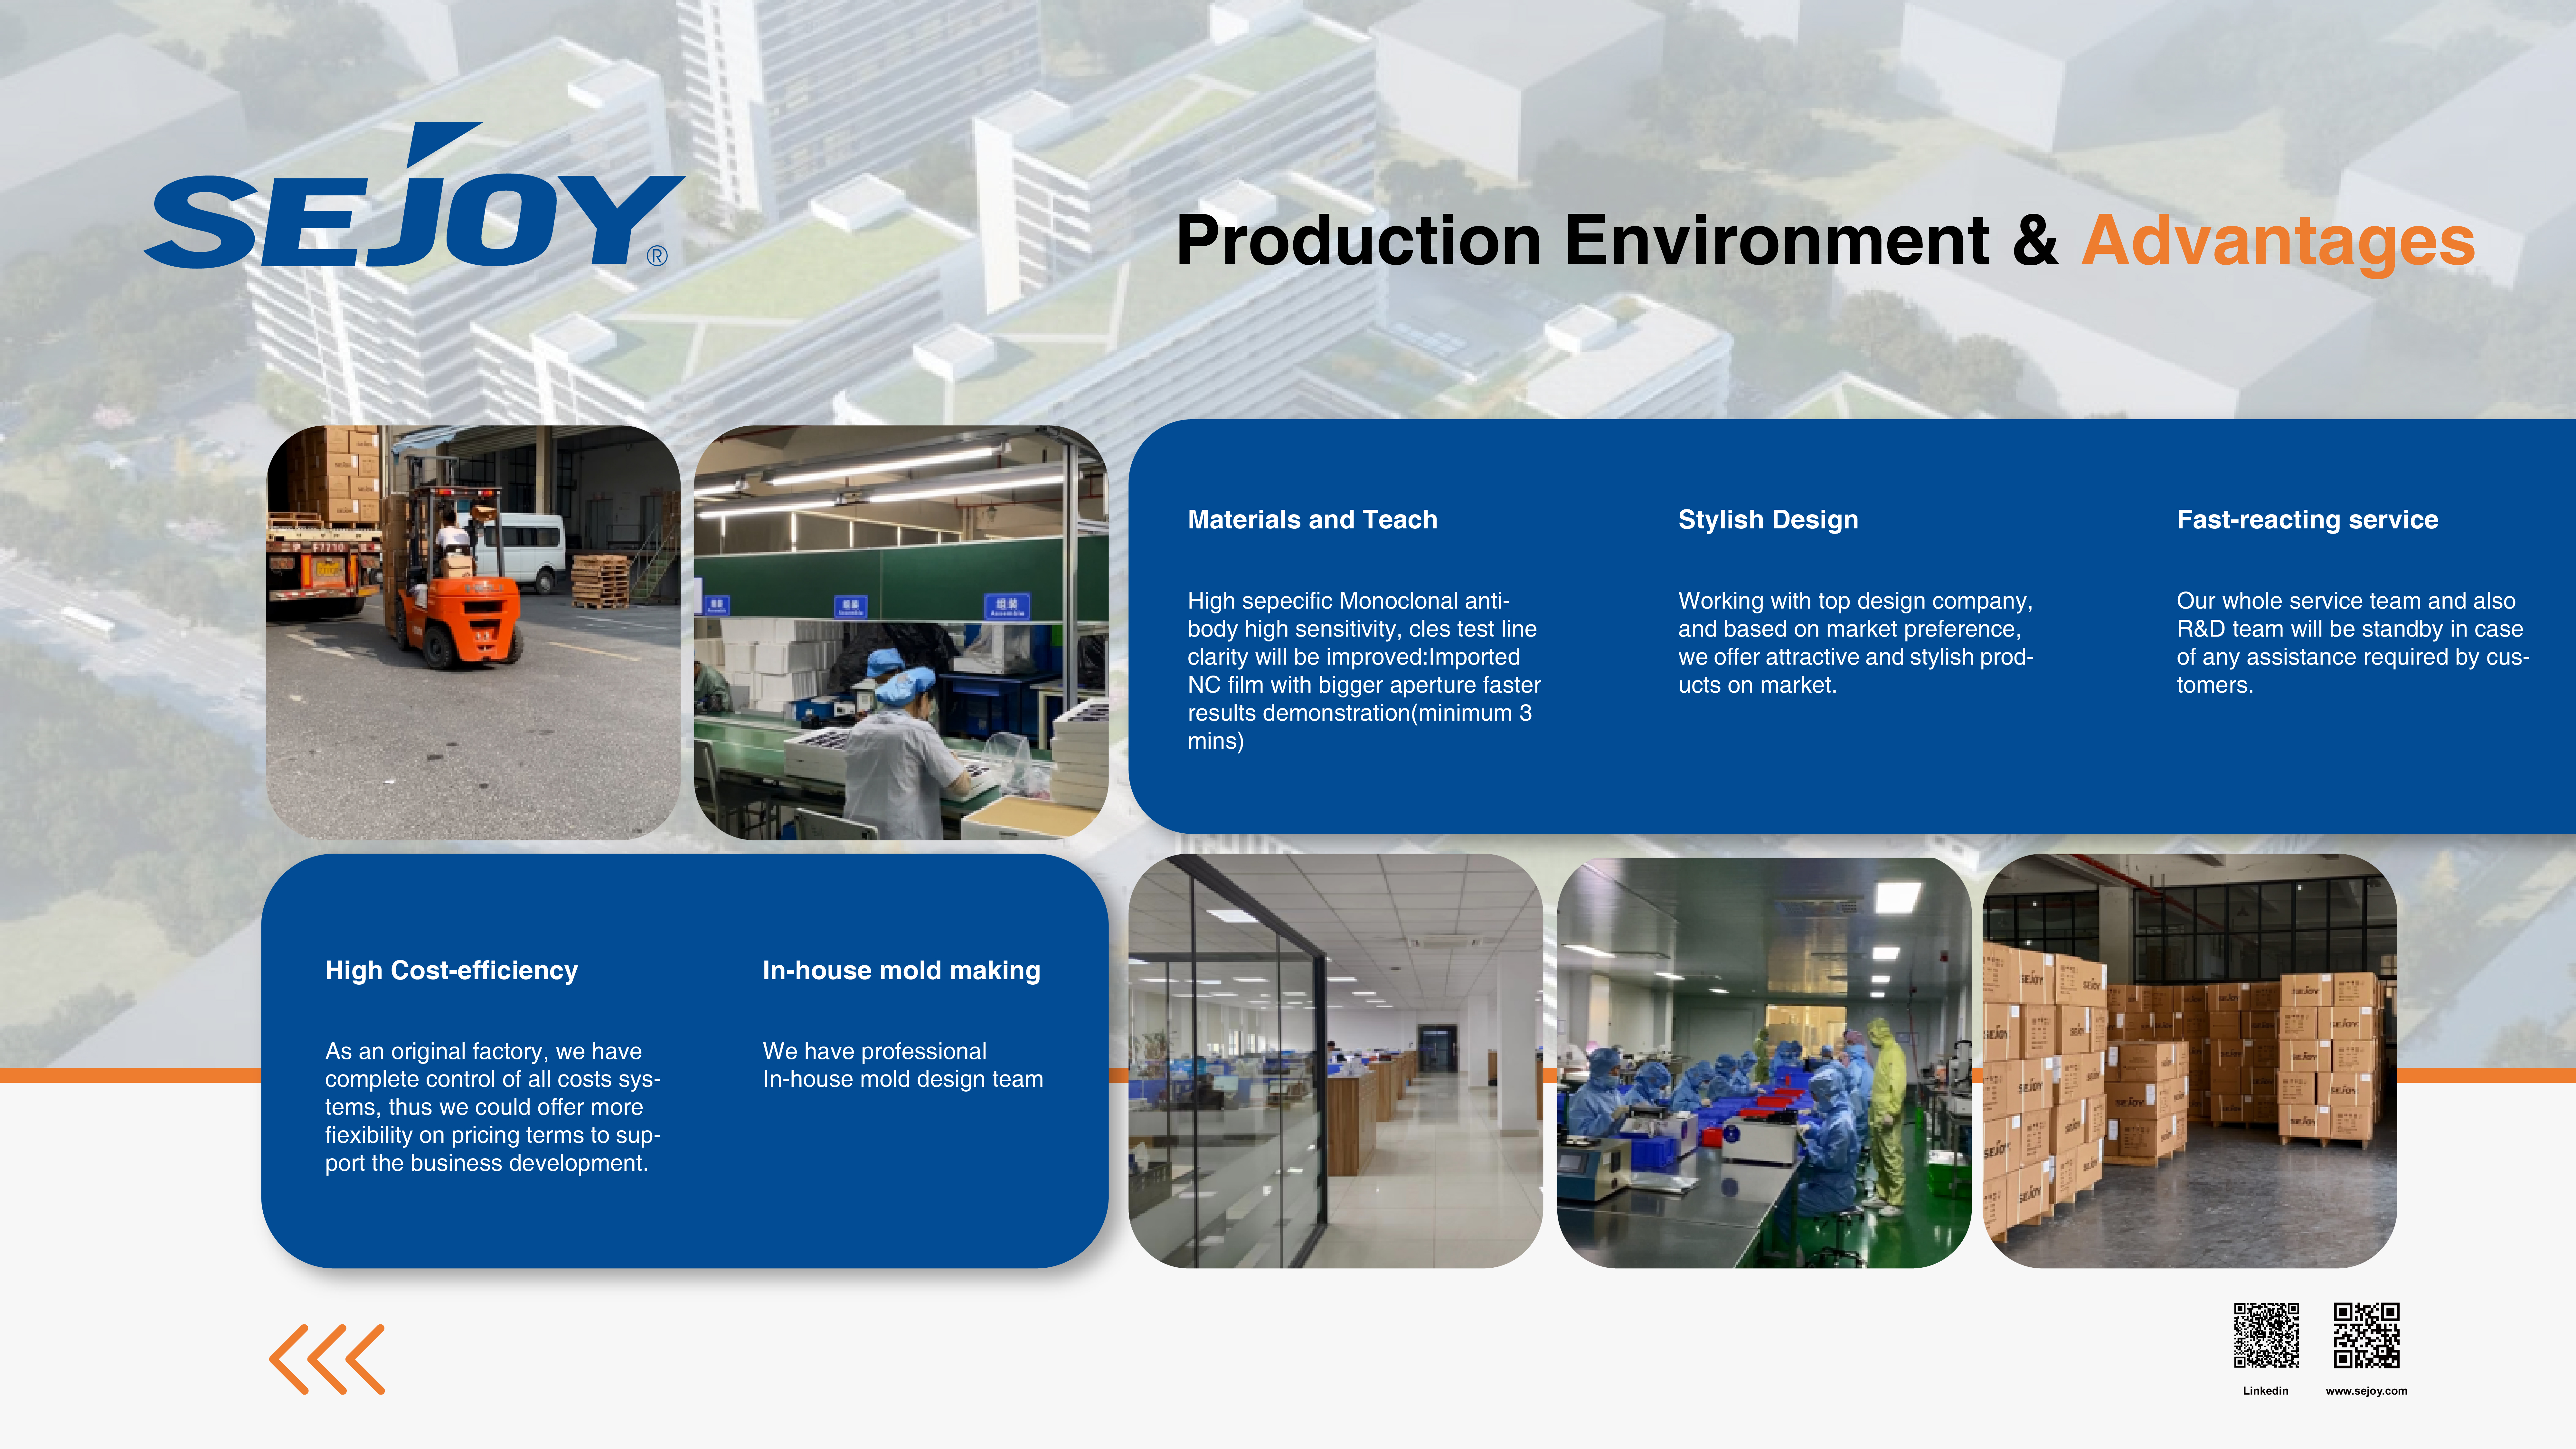 Production Environment & Advantages